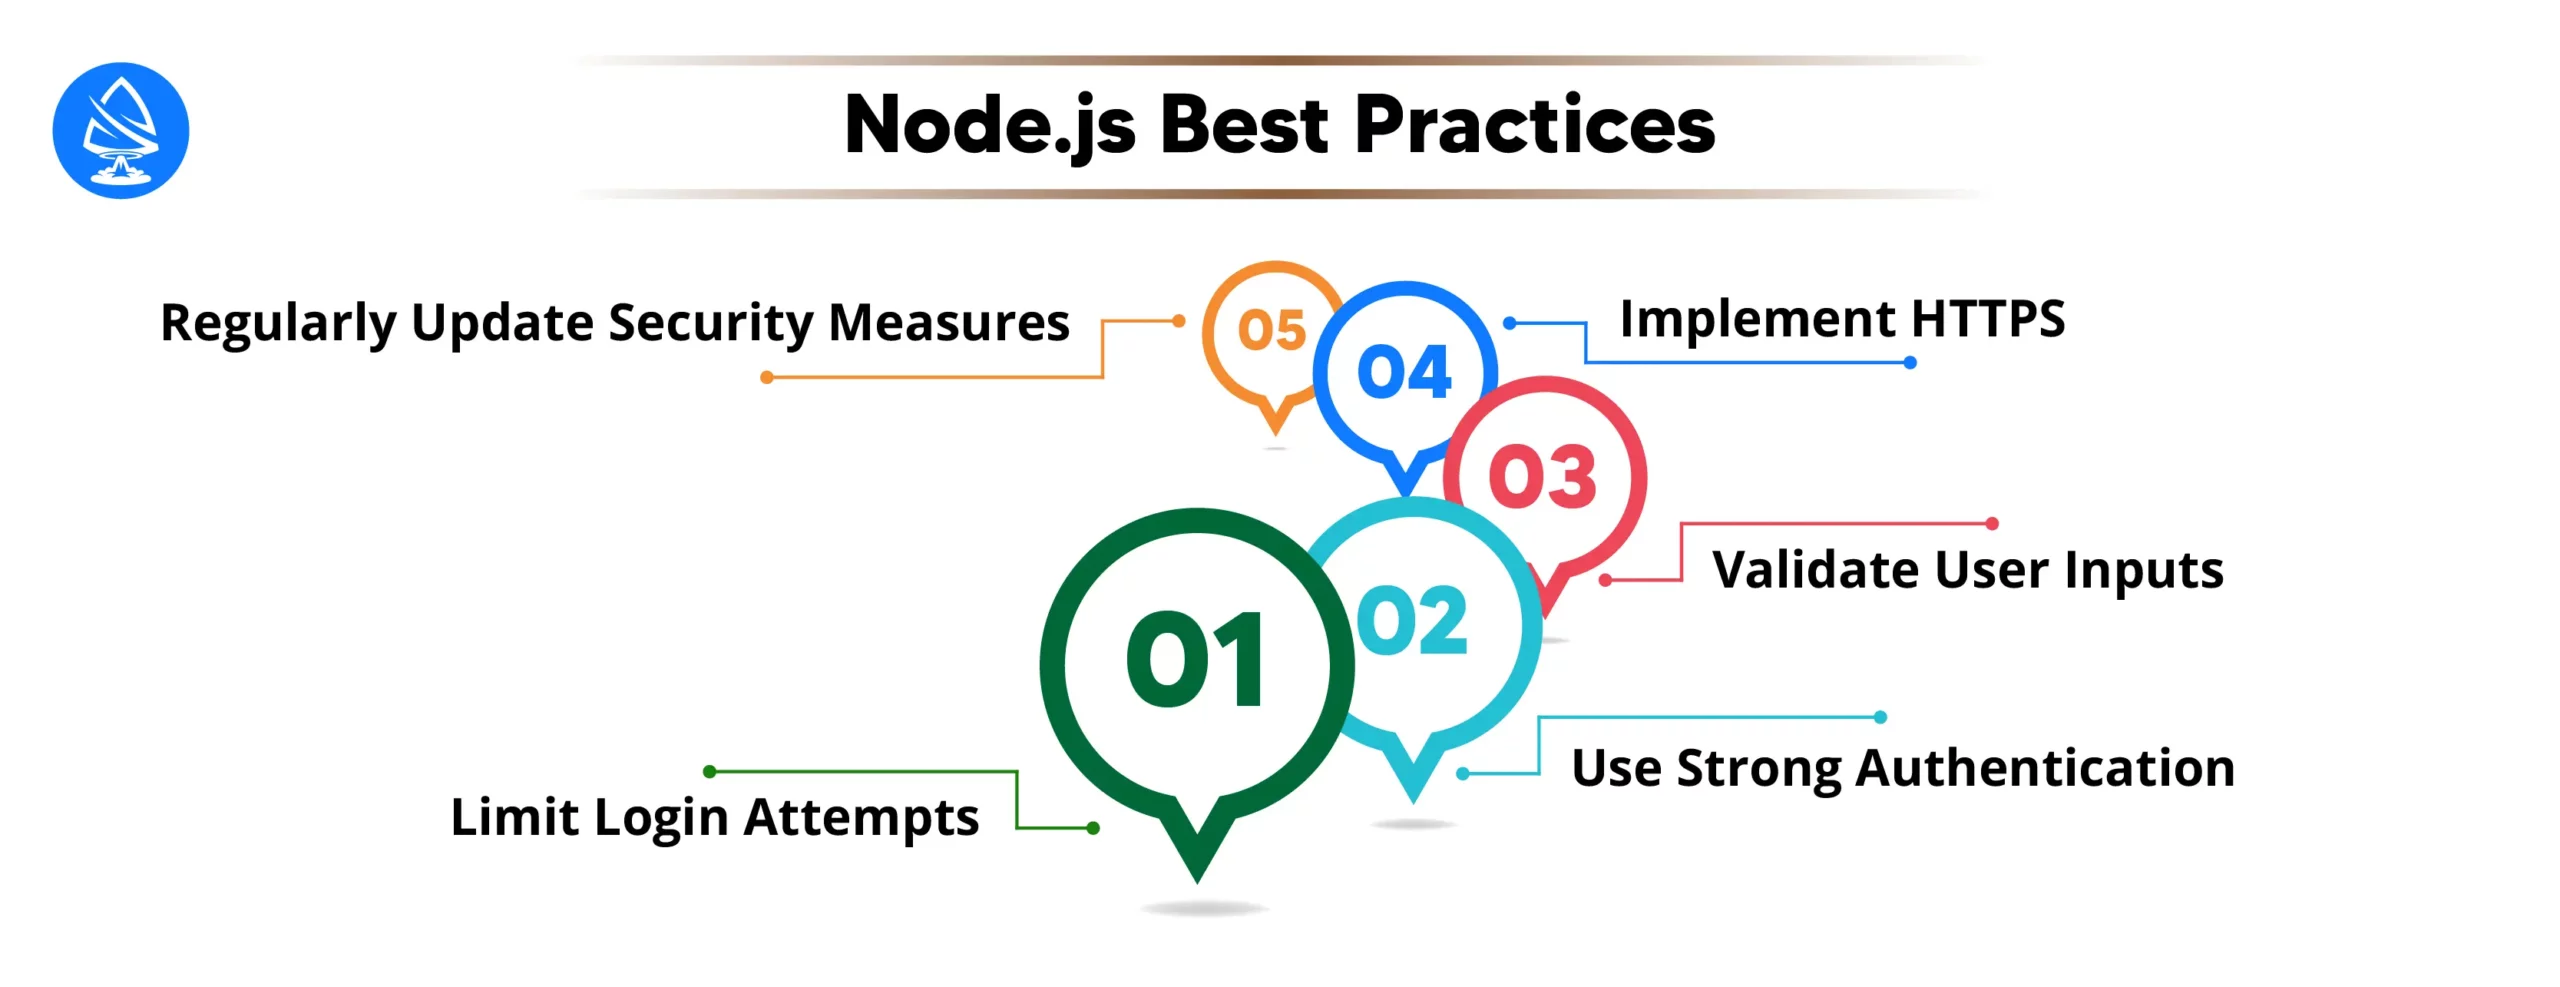 Node.js Best Practices: 